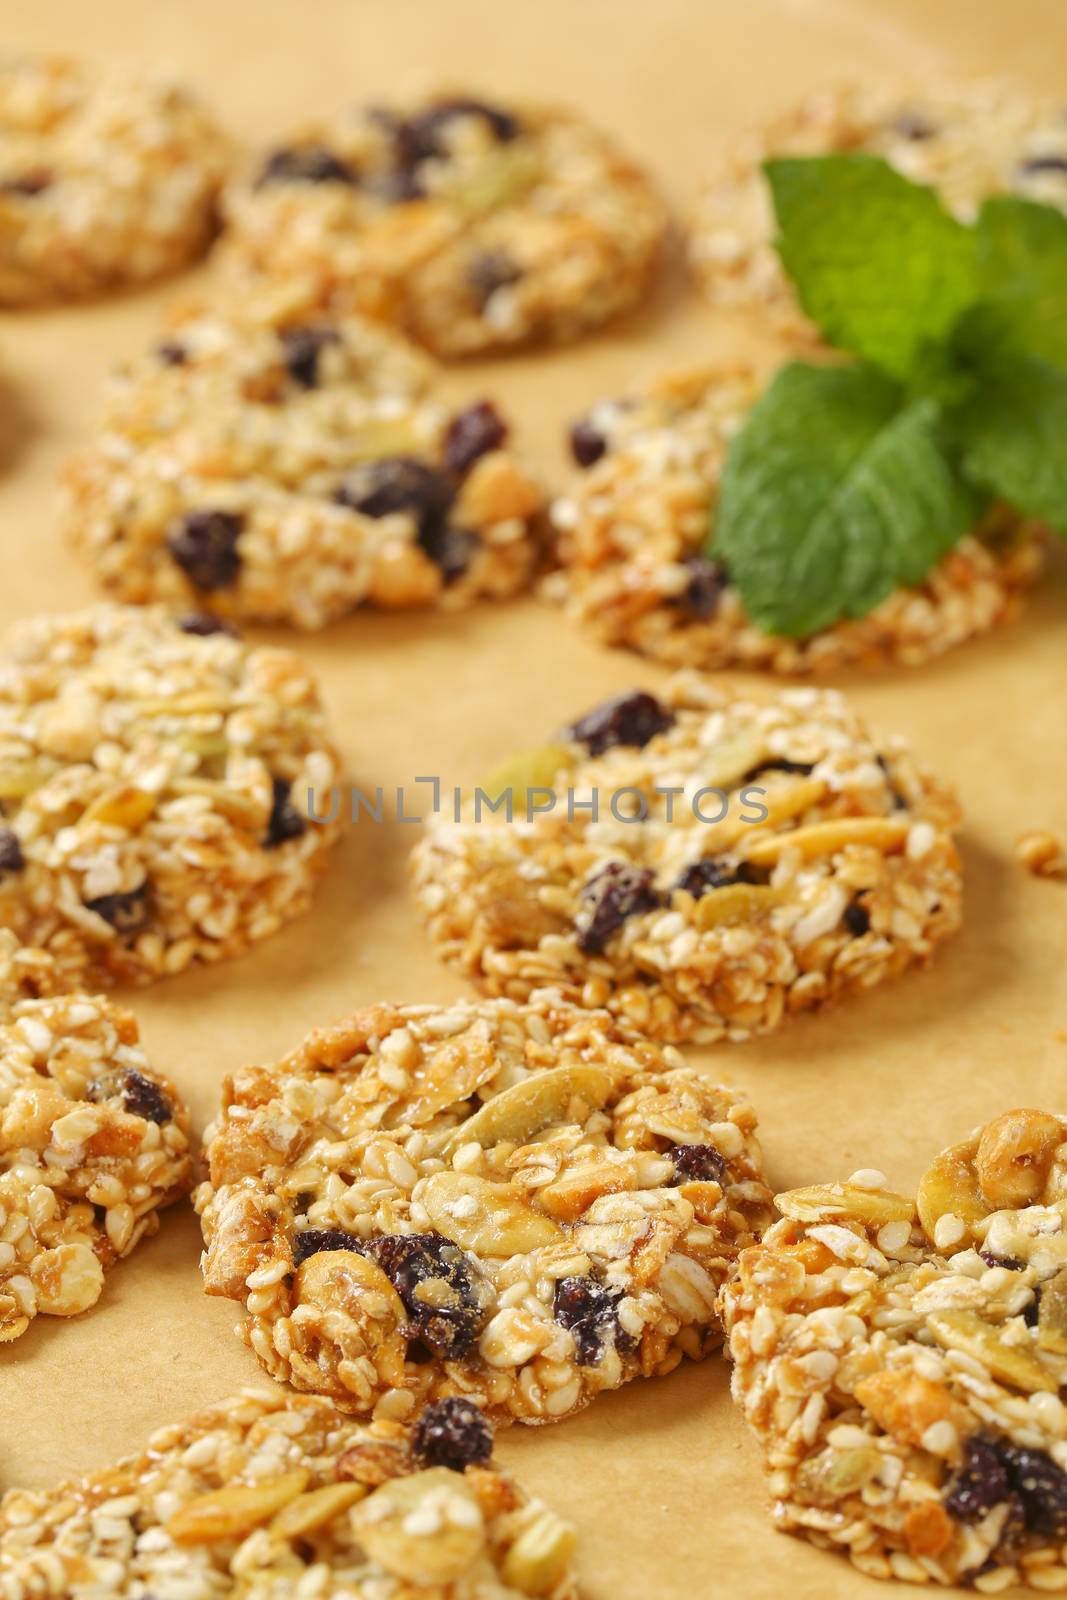 Sesame raisin cookies by Digifoodstock